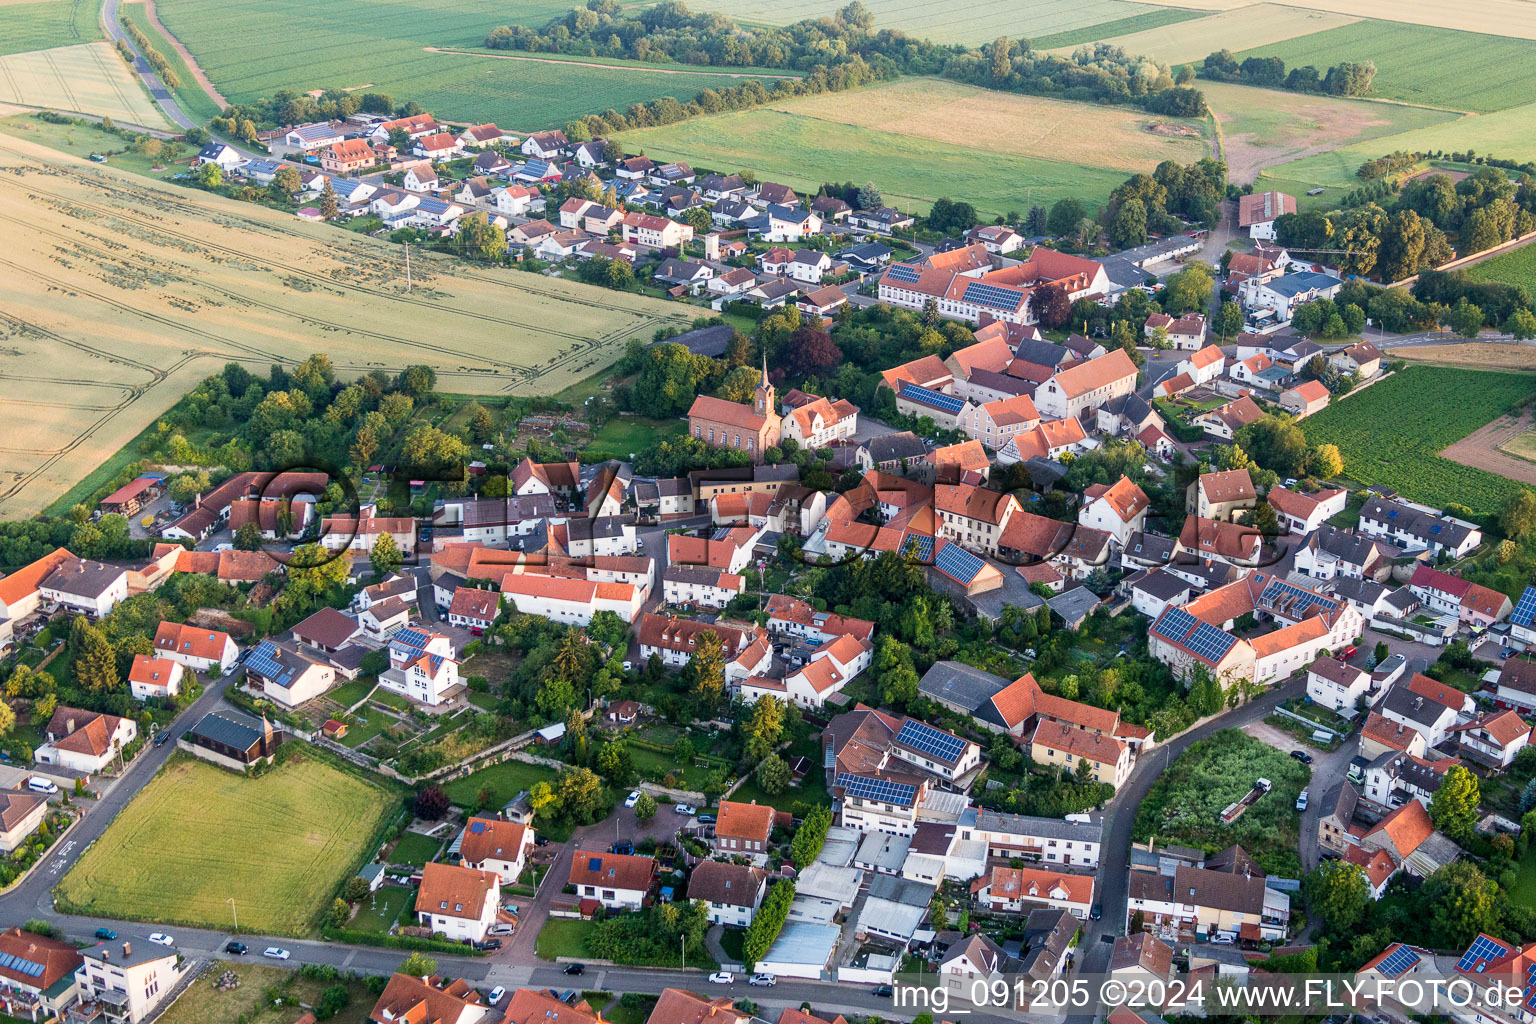 Luftbild von Dorf - Ansicht am Rande von landwirtschaftlichen Feldern und Nutzflächen in Lautersheim im Bundesland Rheinland-Pfalz, Deutschland